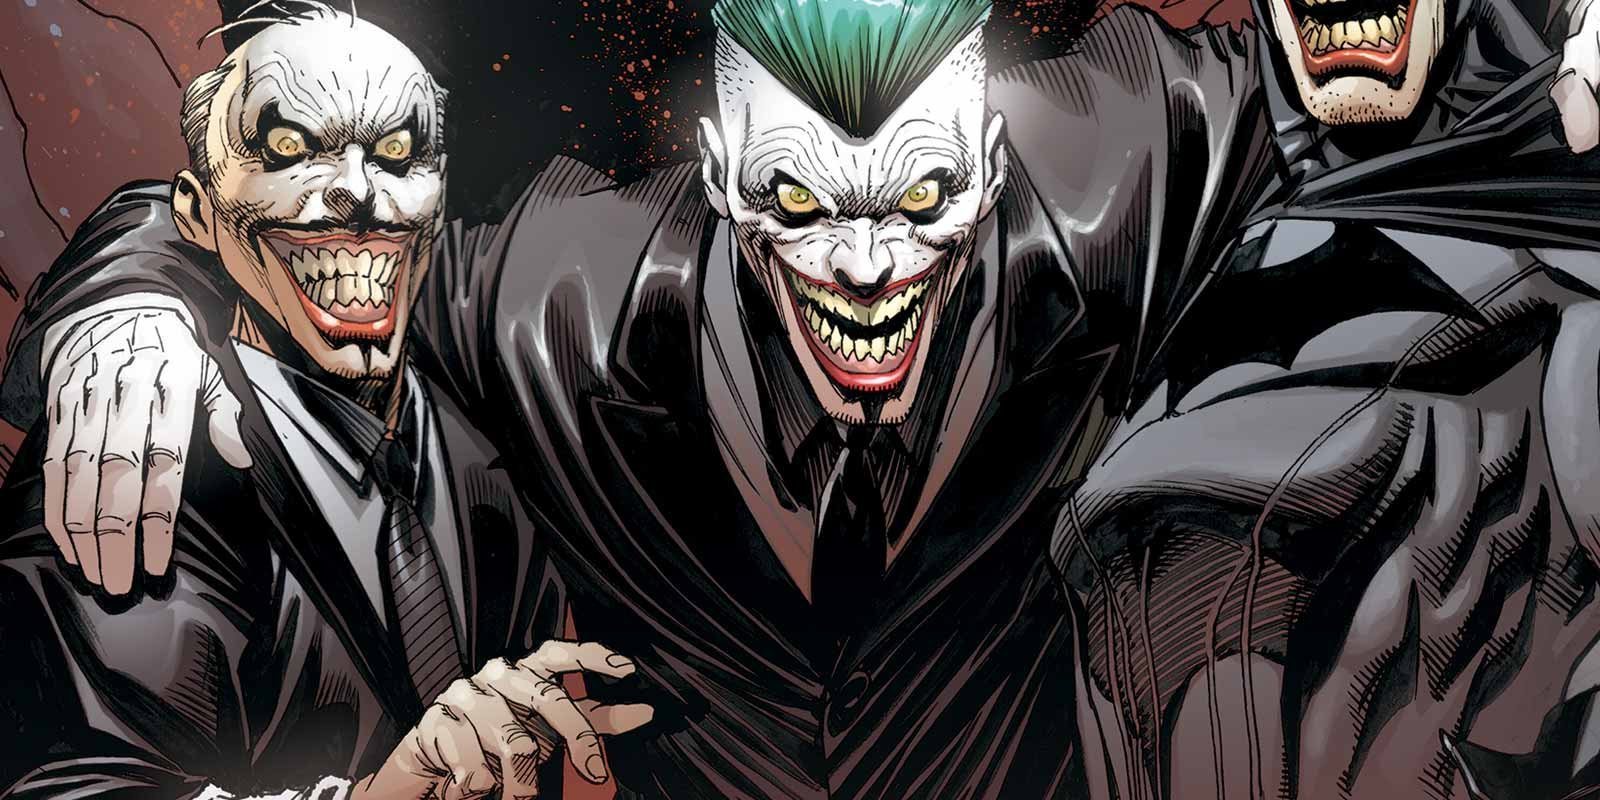 Publicada la primera imagen oficial de Joaquin Phoenix como El Joker - Zonared1600 x 800